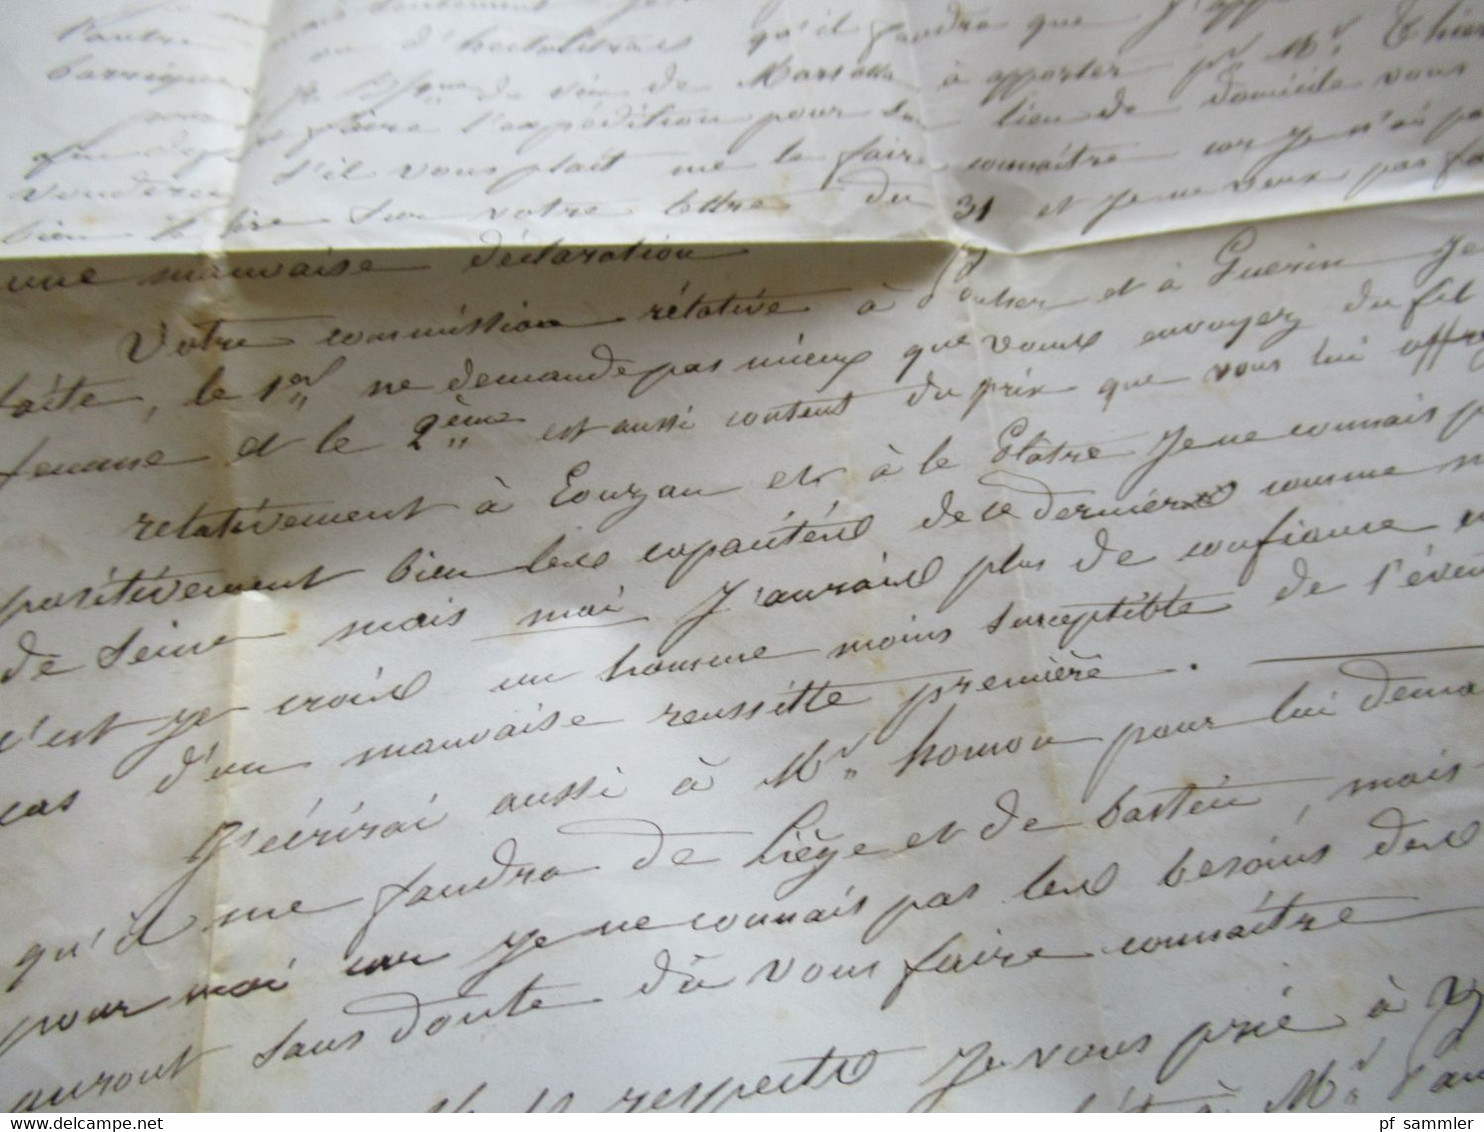 Italien 1856 roter Stempel Saard Faltbrief mit Inhalt nach Legue gesendet Schiffspost ?!